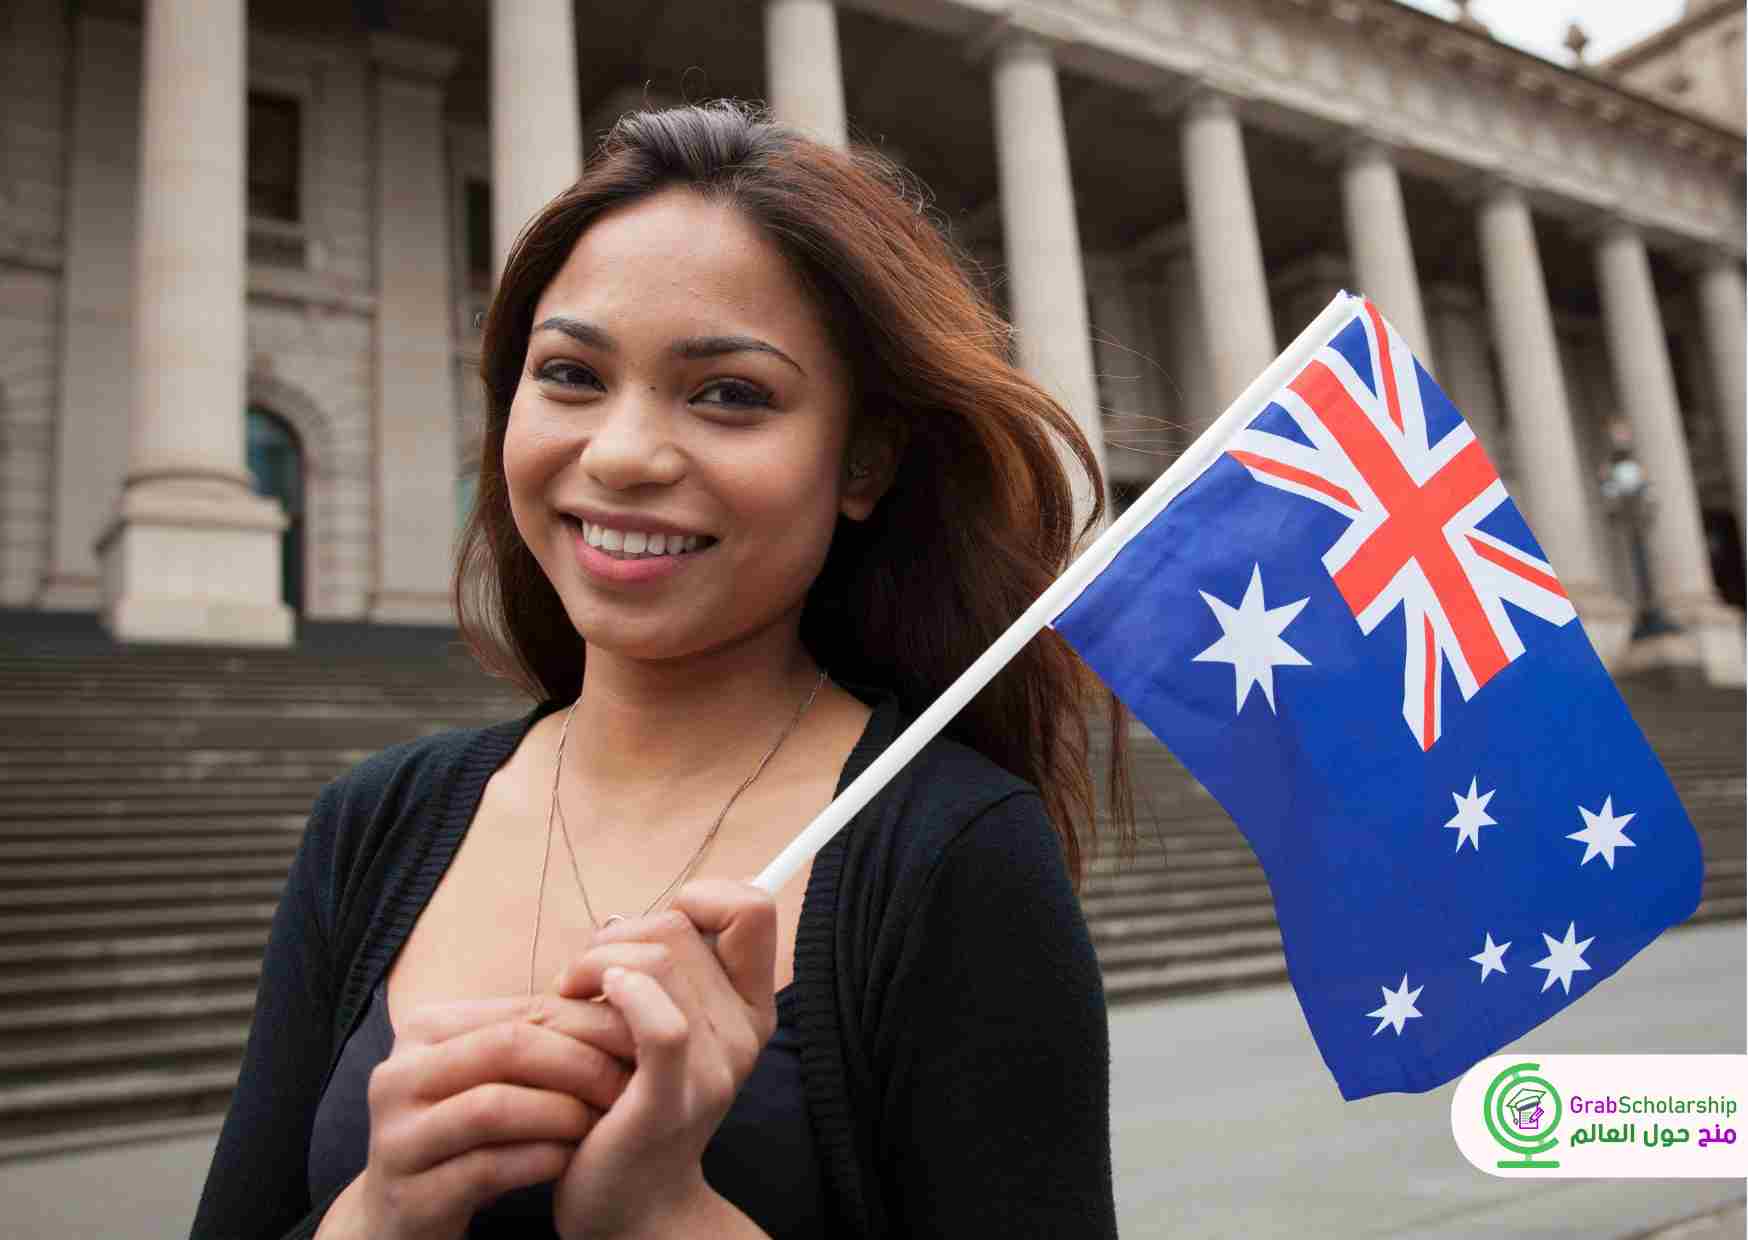 منحة لدراسة الإنجليزي في استراليا والحصول علي قبول جامعي